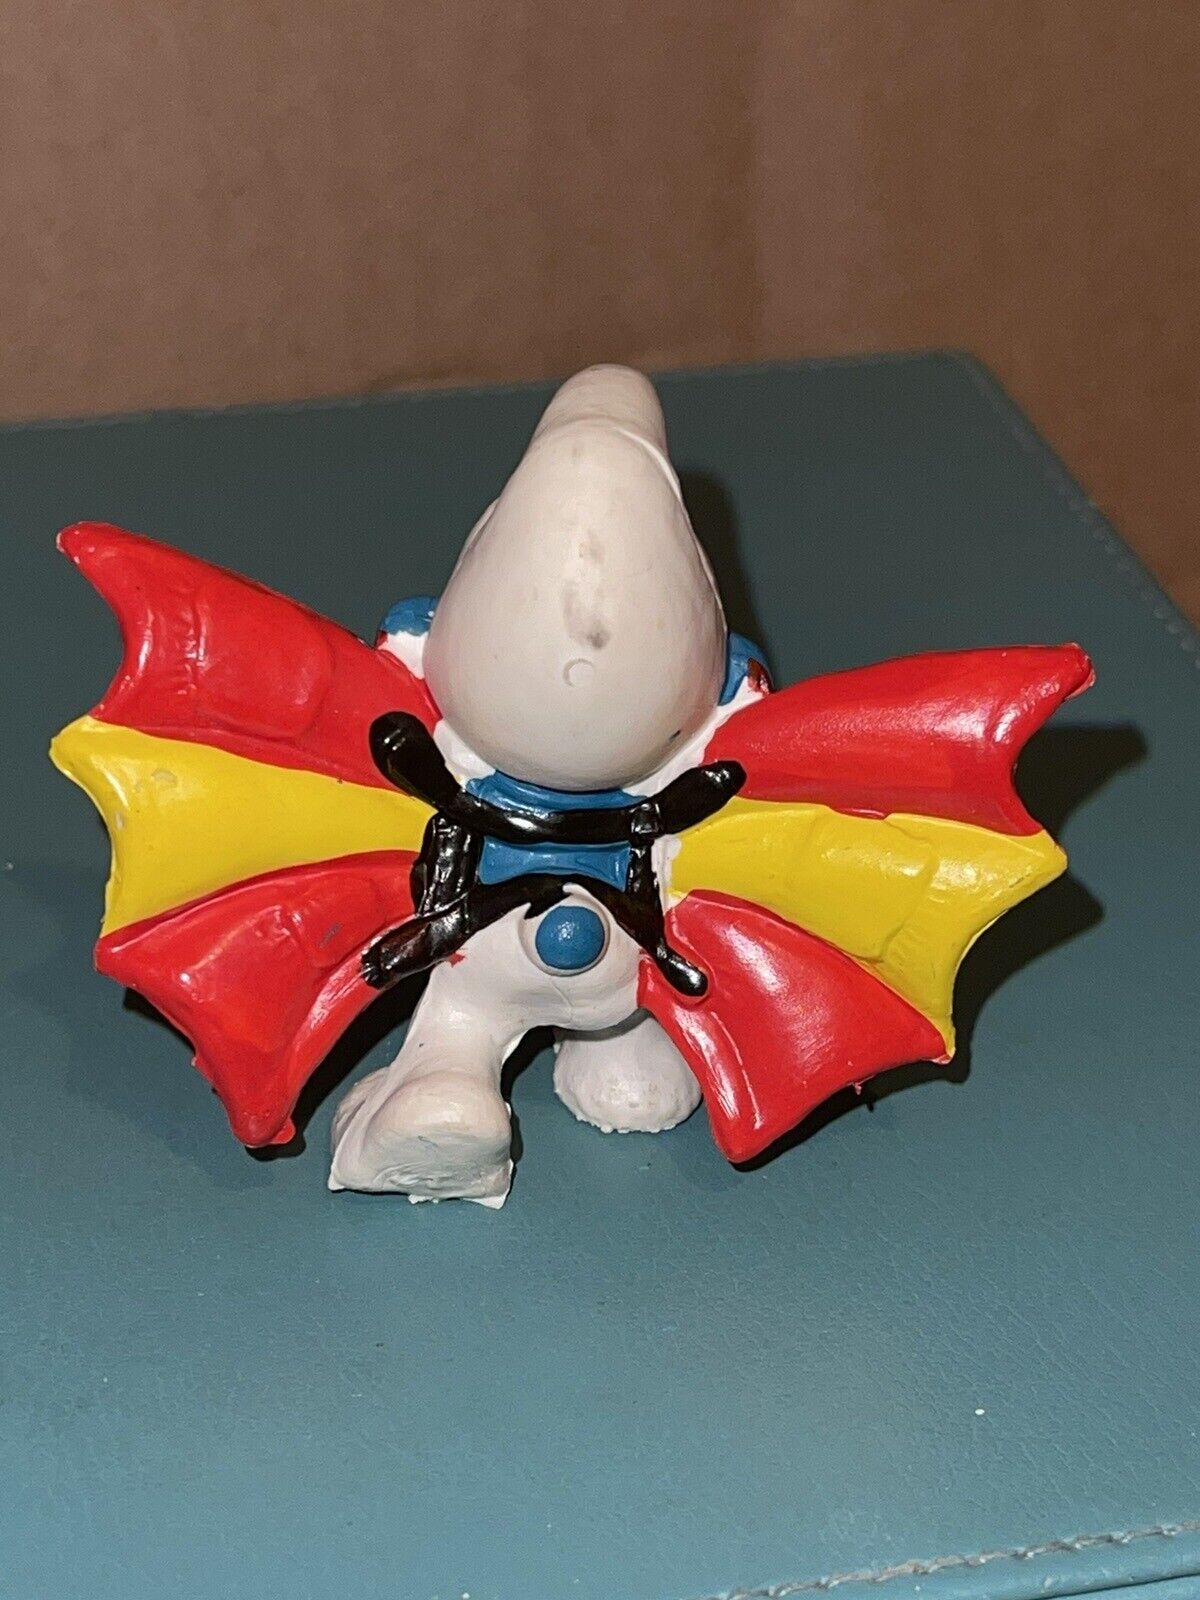 The Smurfs Hand Glider Vintage Smurf Figurine Schleich  Peyo PVC